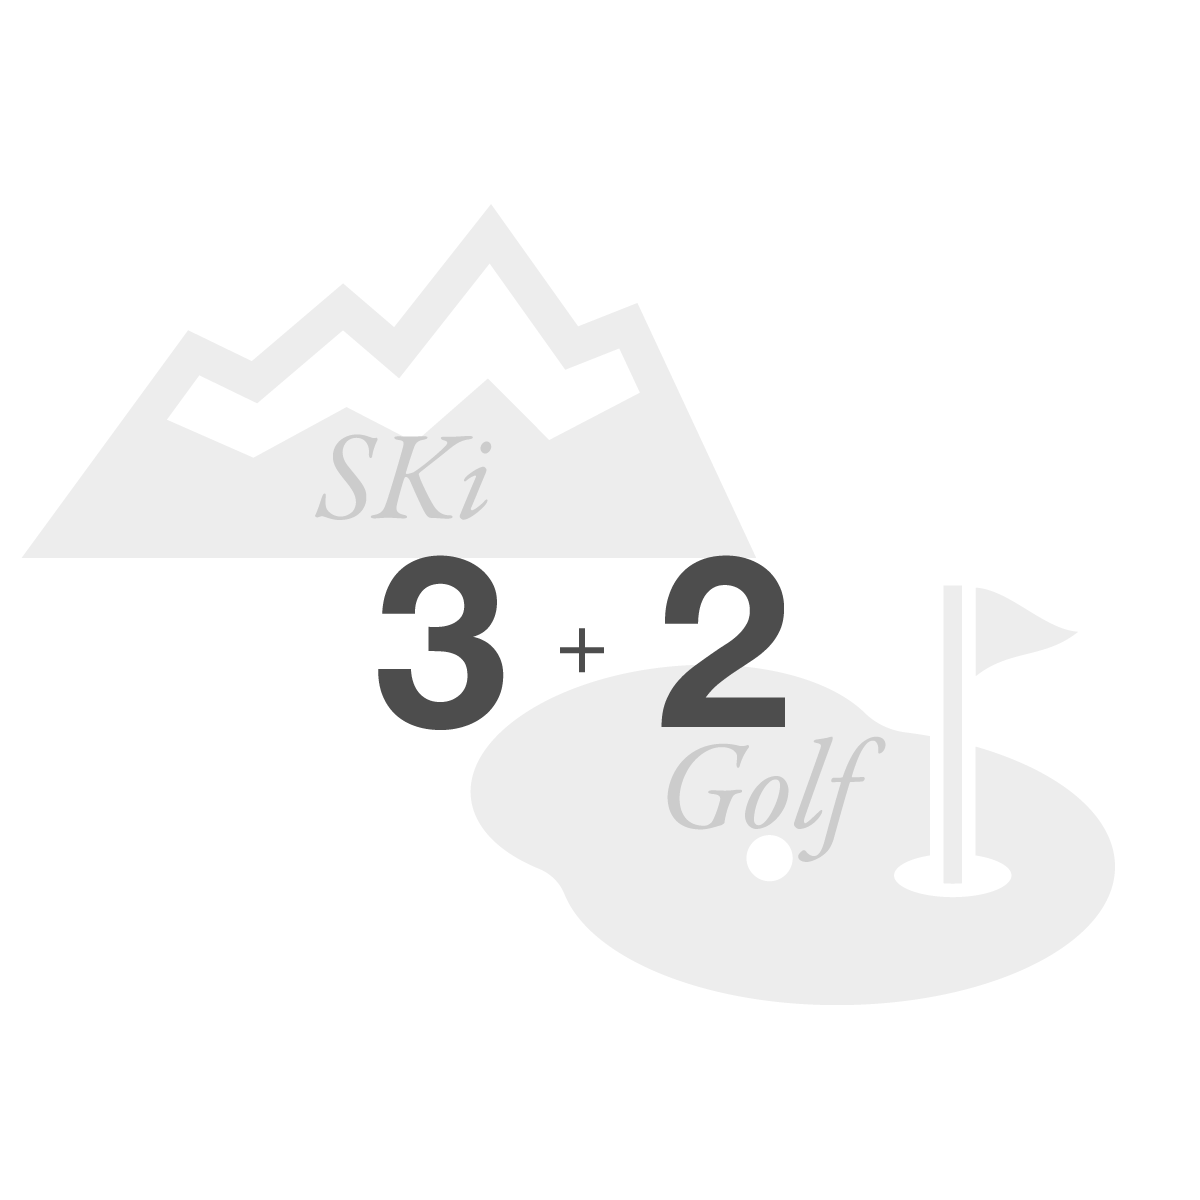 スキーリゾート3施設とゴルフ場2施設